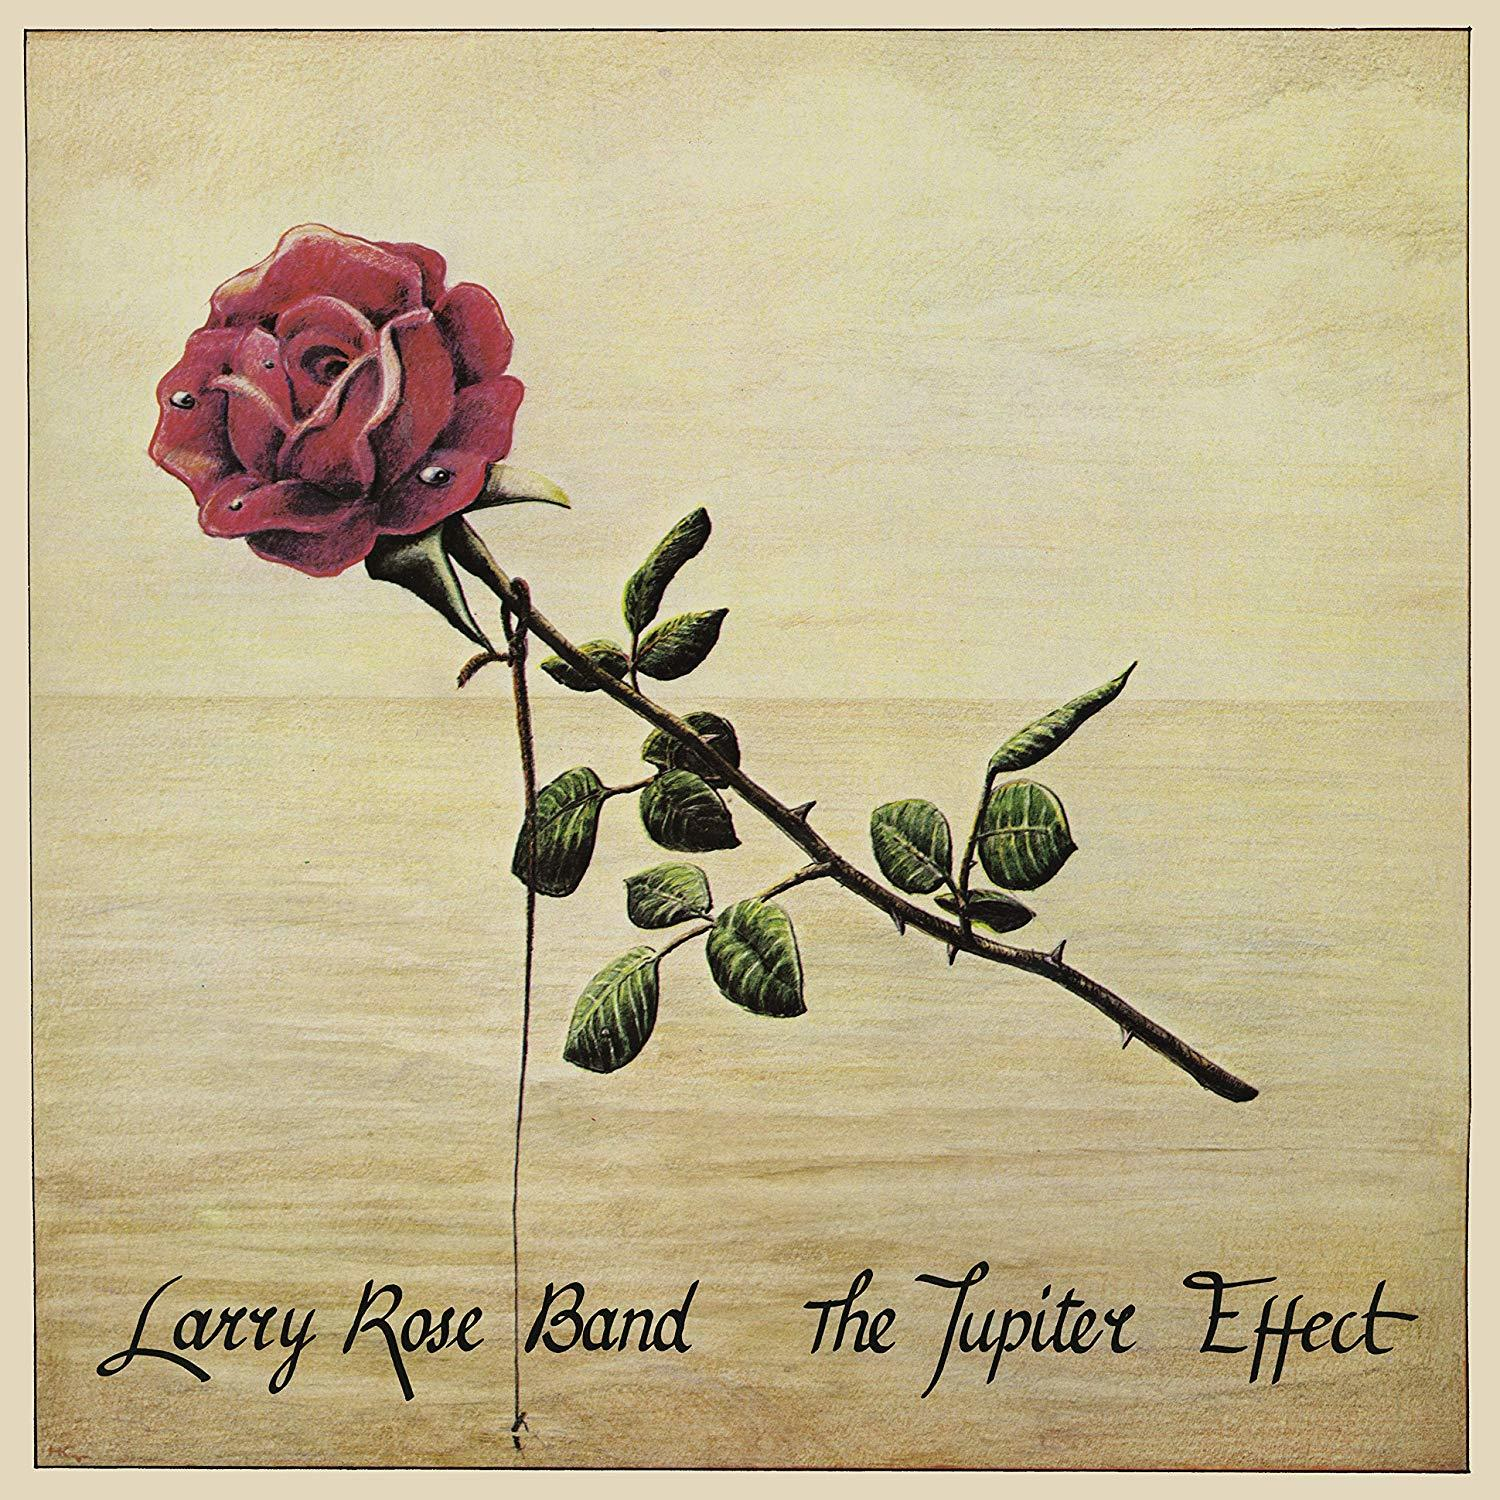 - (Vinyl) EFFECT - JUPITER Band Larry Rose